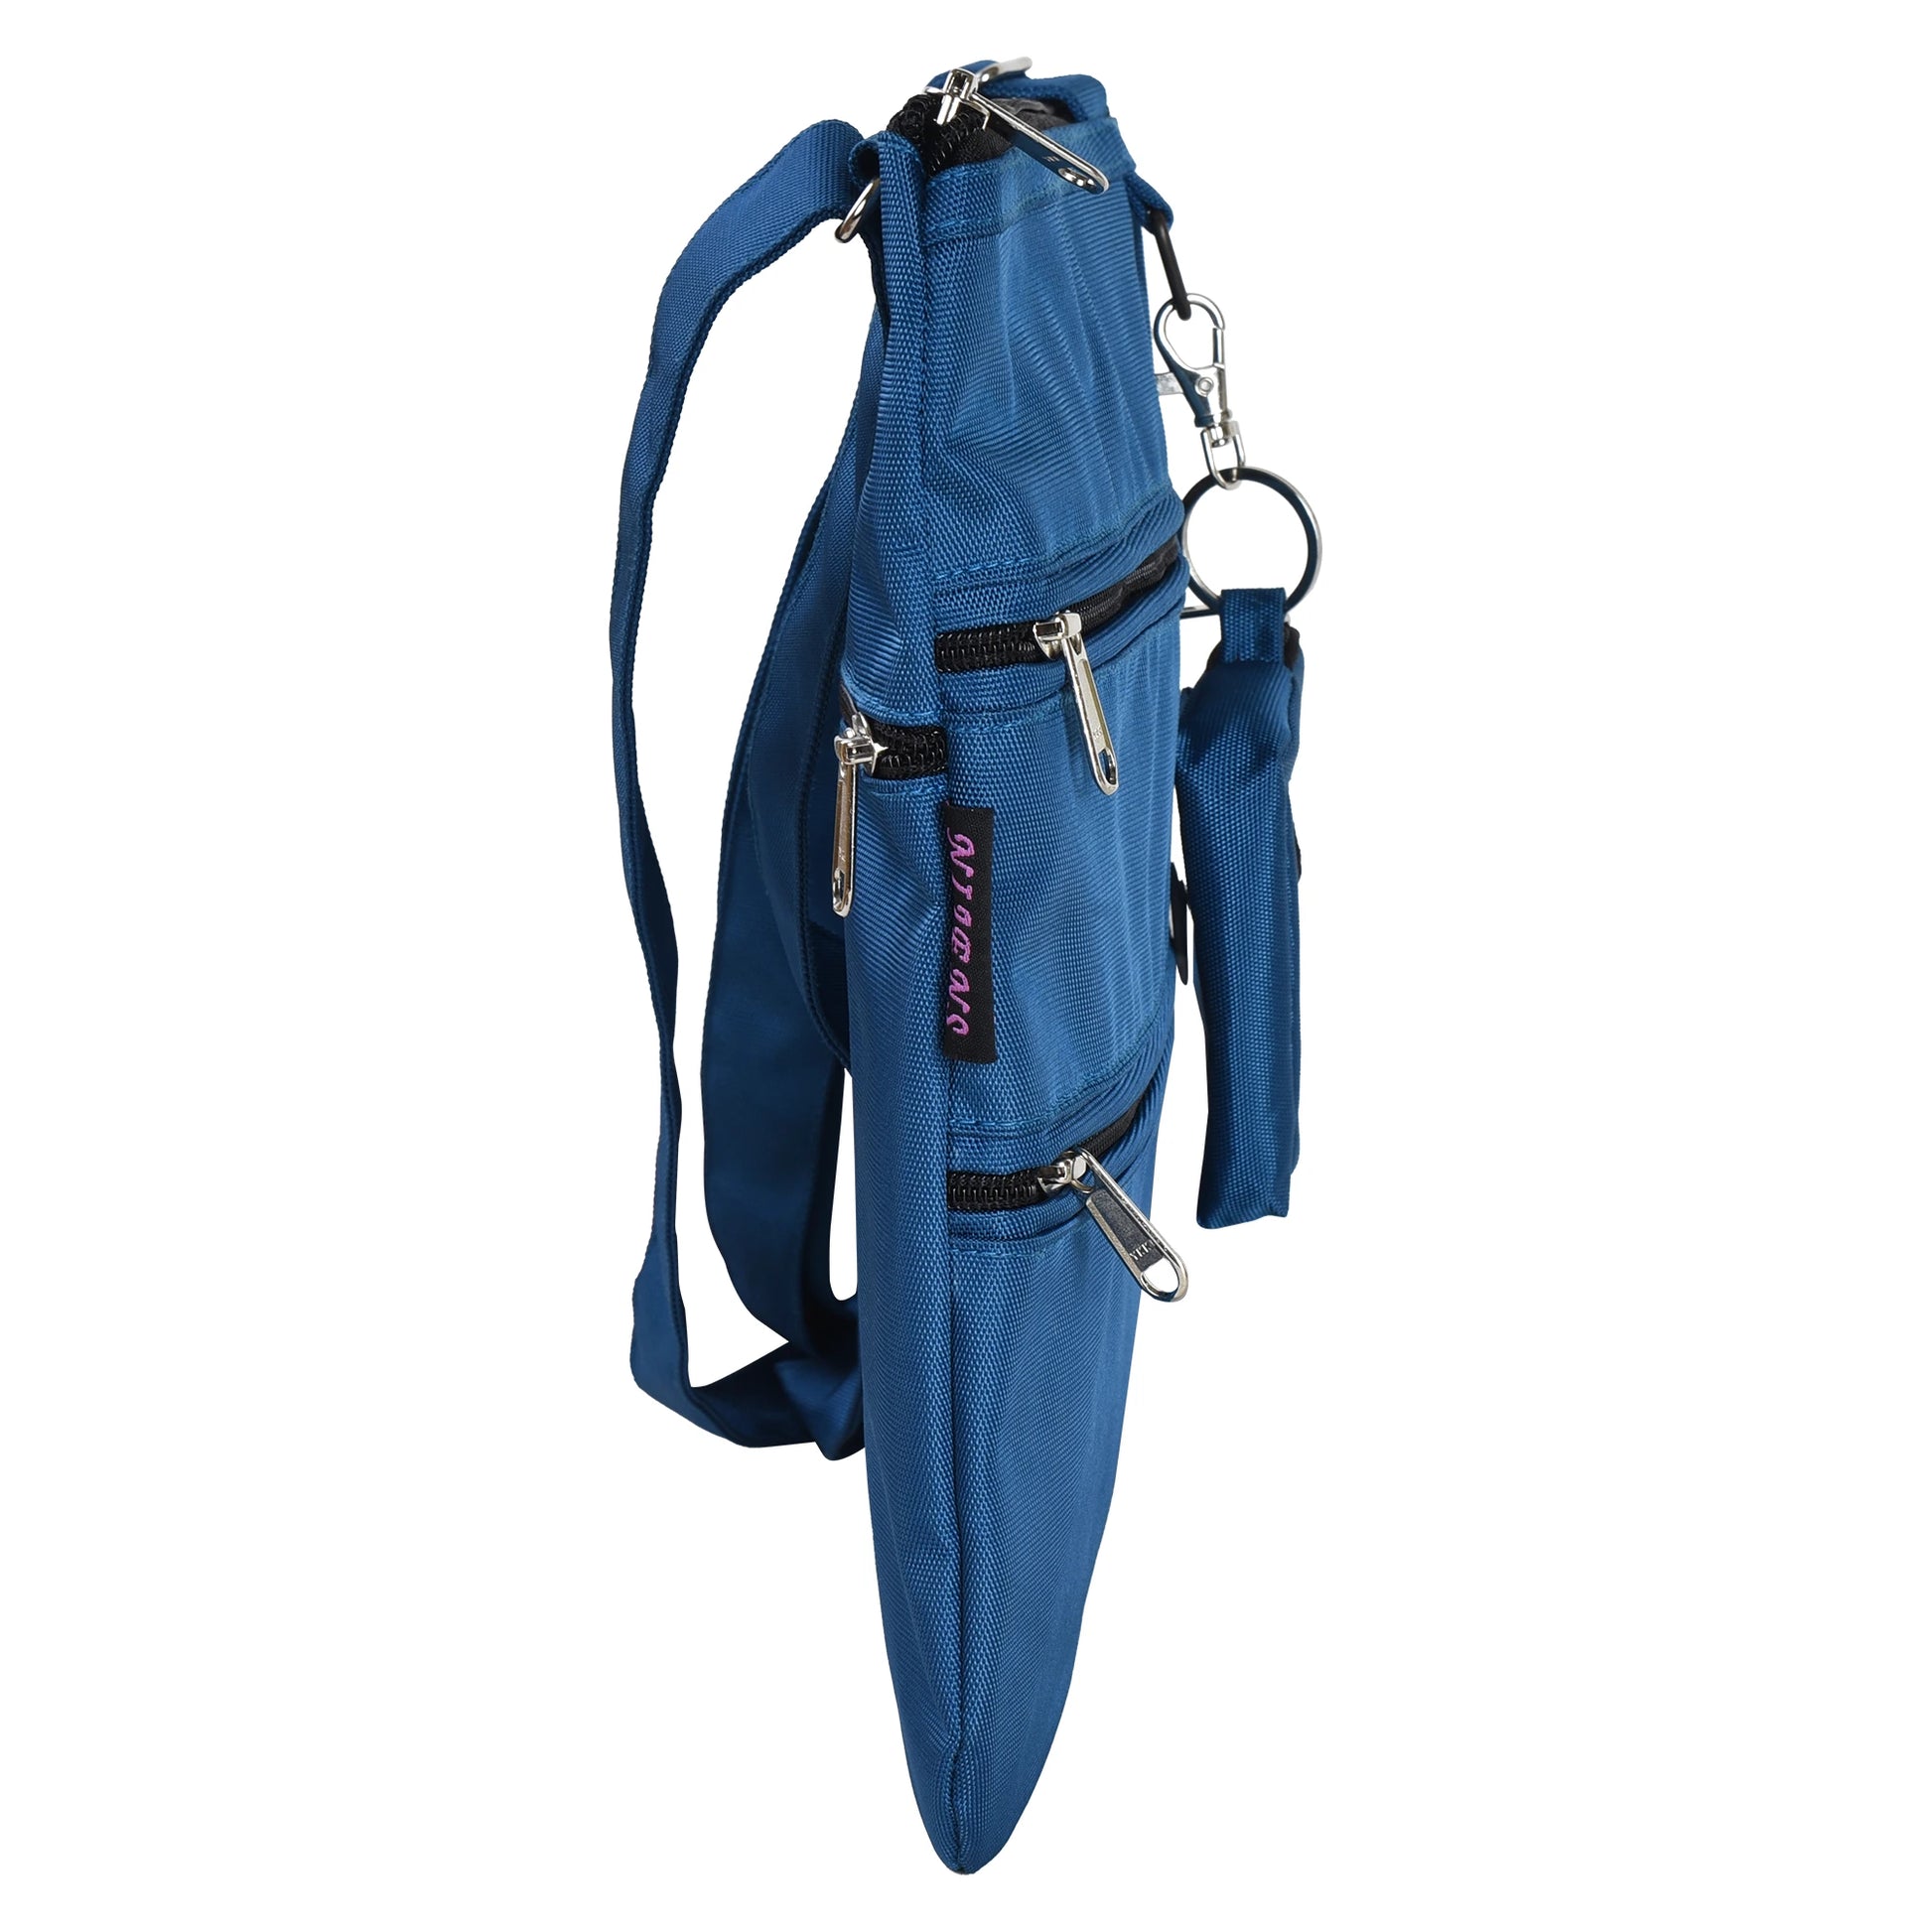 Seitenansicht von Gassi-Umhängetasche aus wasserabweisenden Stoff Blau mit 4 Reißverschlusstaschen und einer extra kleinen Beuteltasche für Hundekotbeutel zum Anhängen.